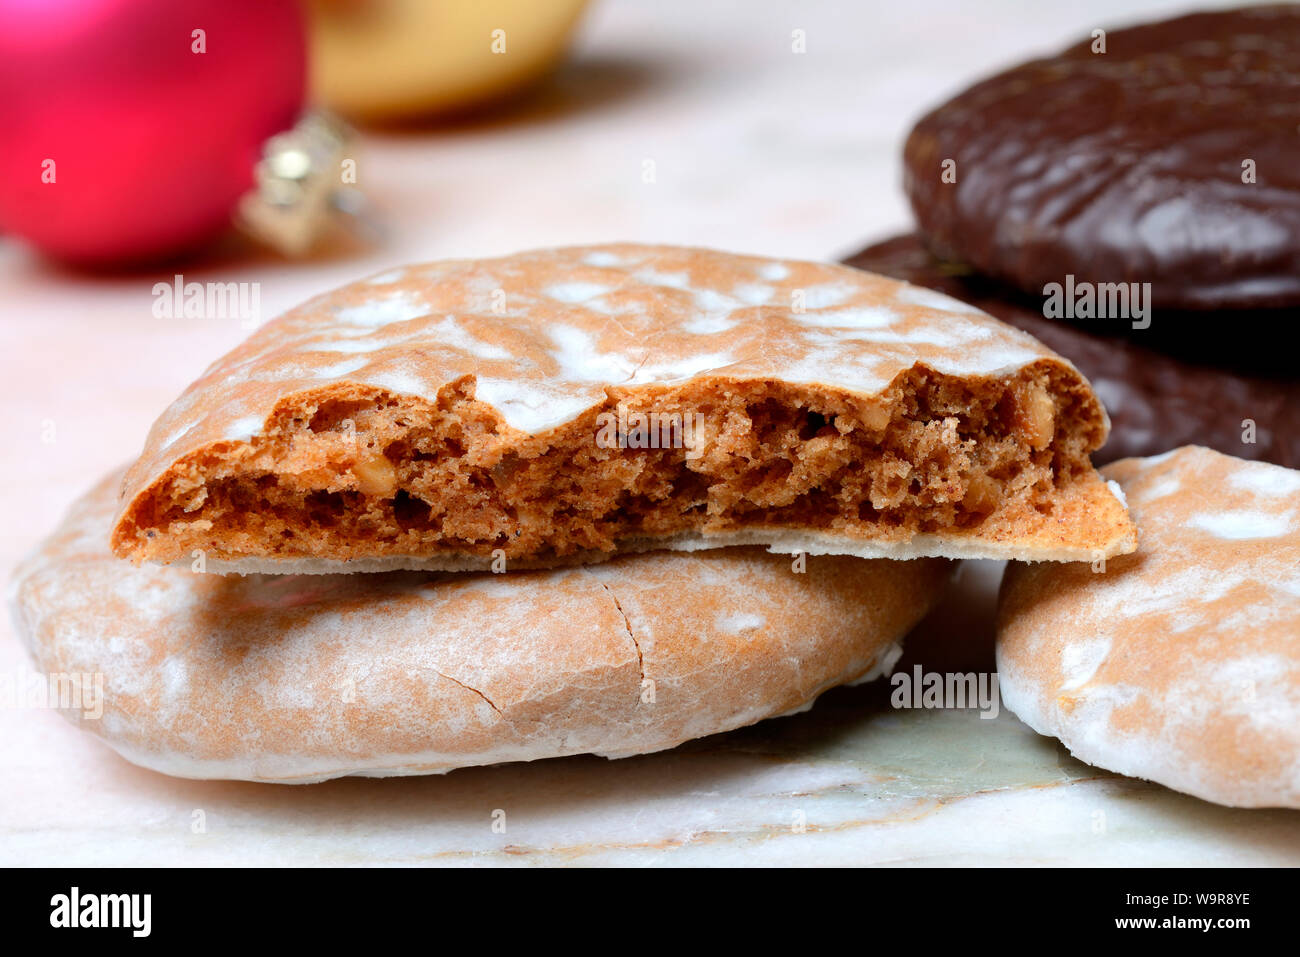 Oblaten-Lebkuchen, Oblatenlebkuchen, halbiert, angebrochen, Nuernberger Lebkuchen, glasiert Stock Photo